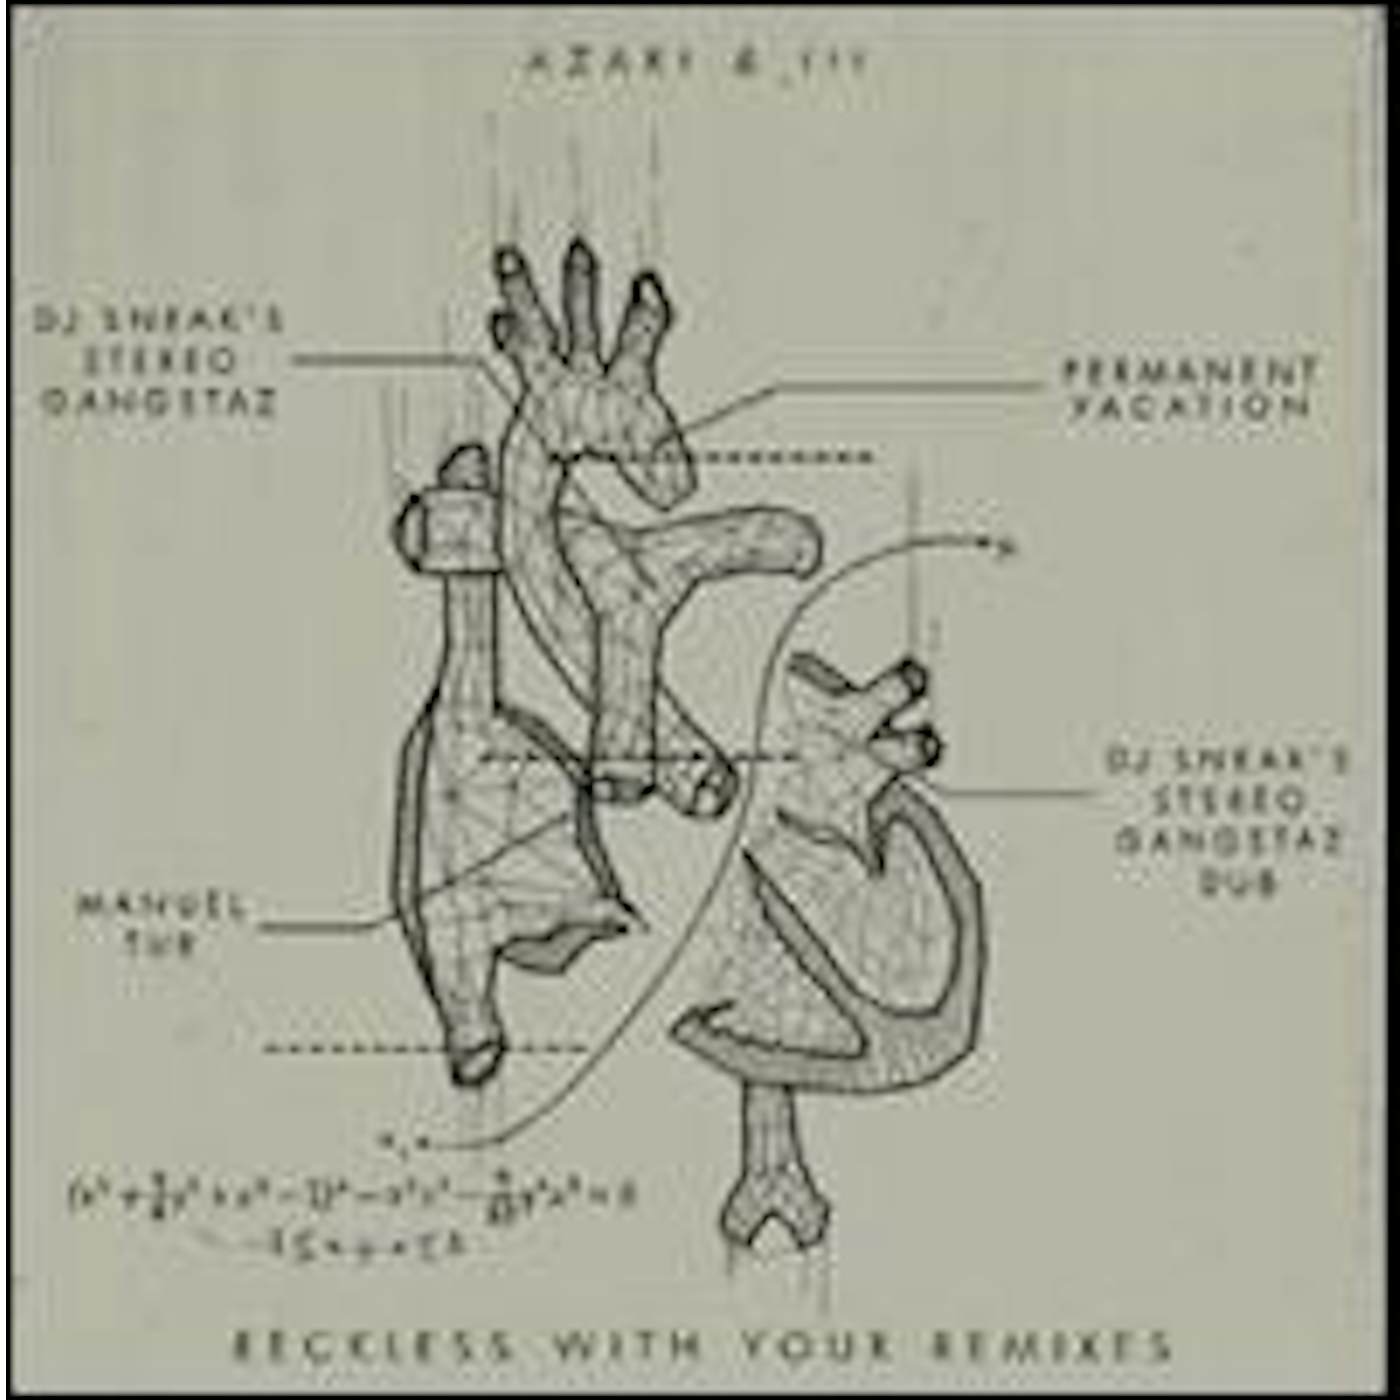 Azari & III RECKLESS WITH YOUR REMIXES Vinyl Record